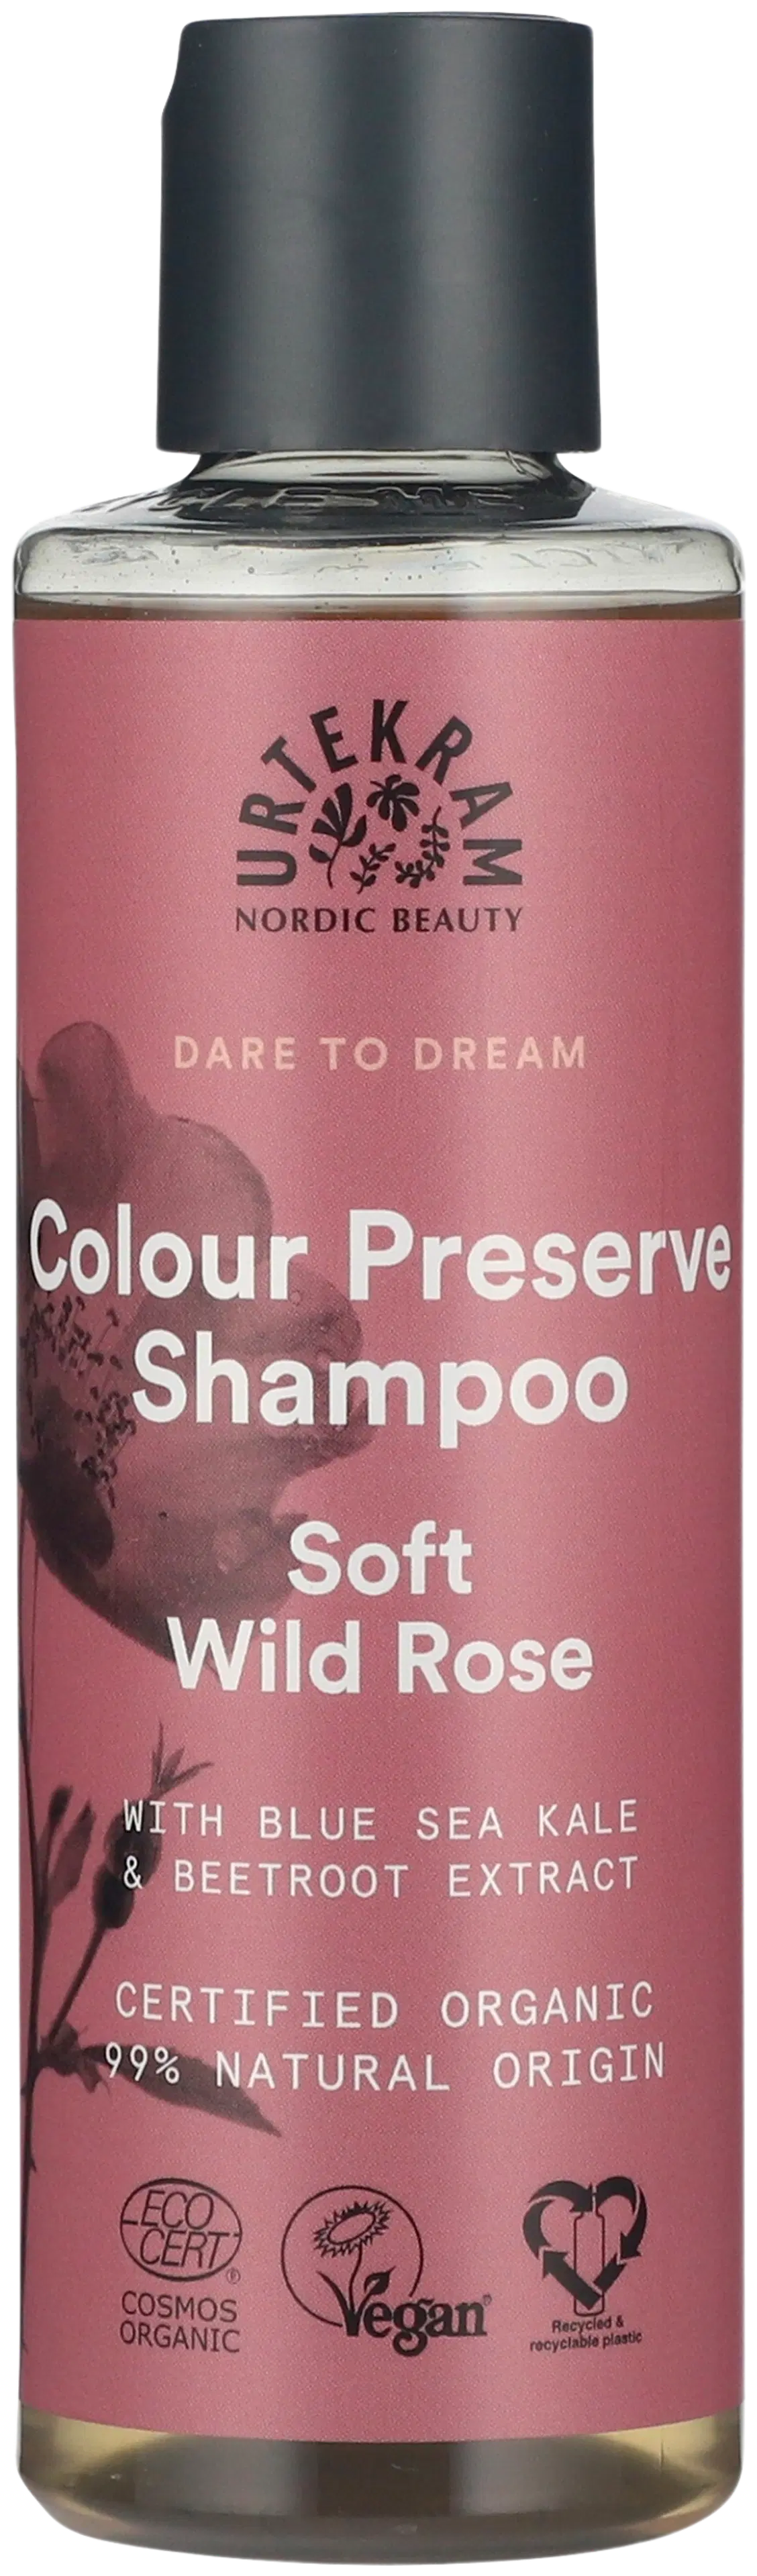 Urtekram Luomu Soft Wild Rose Shampoo 250ml